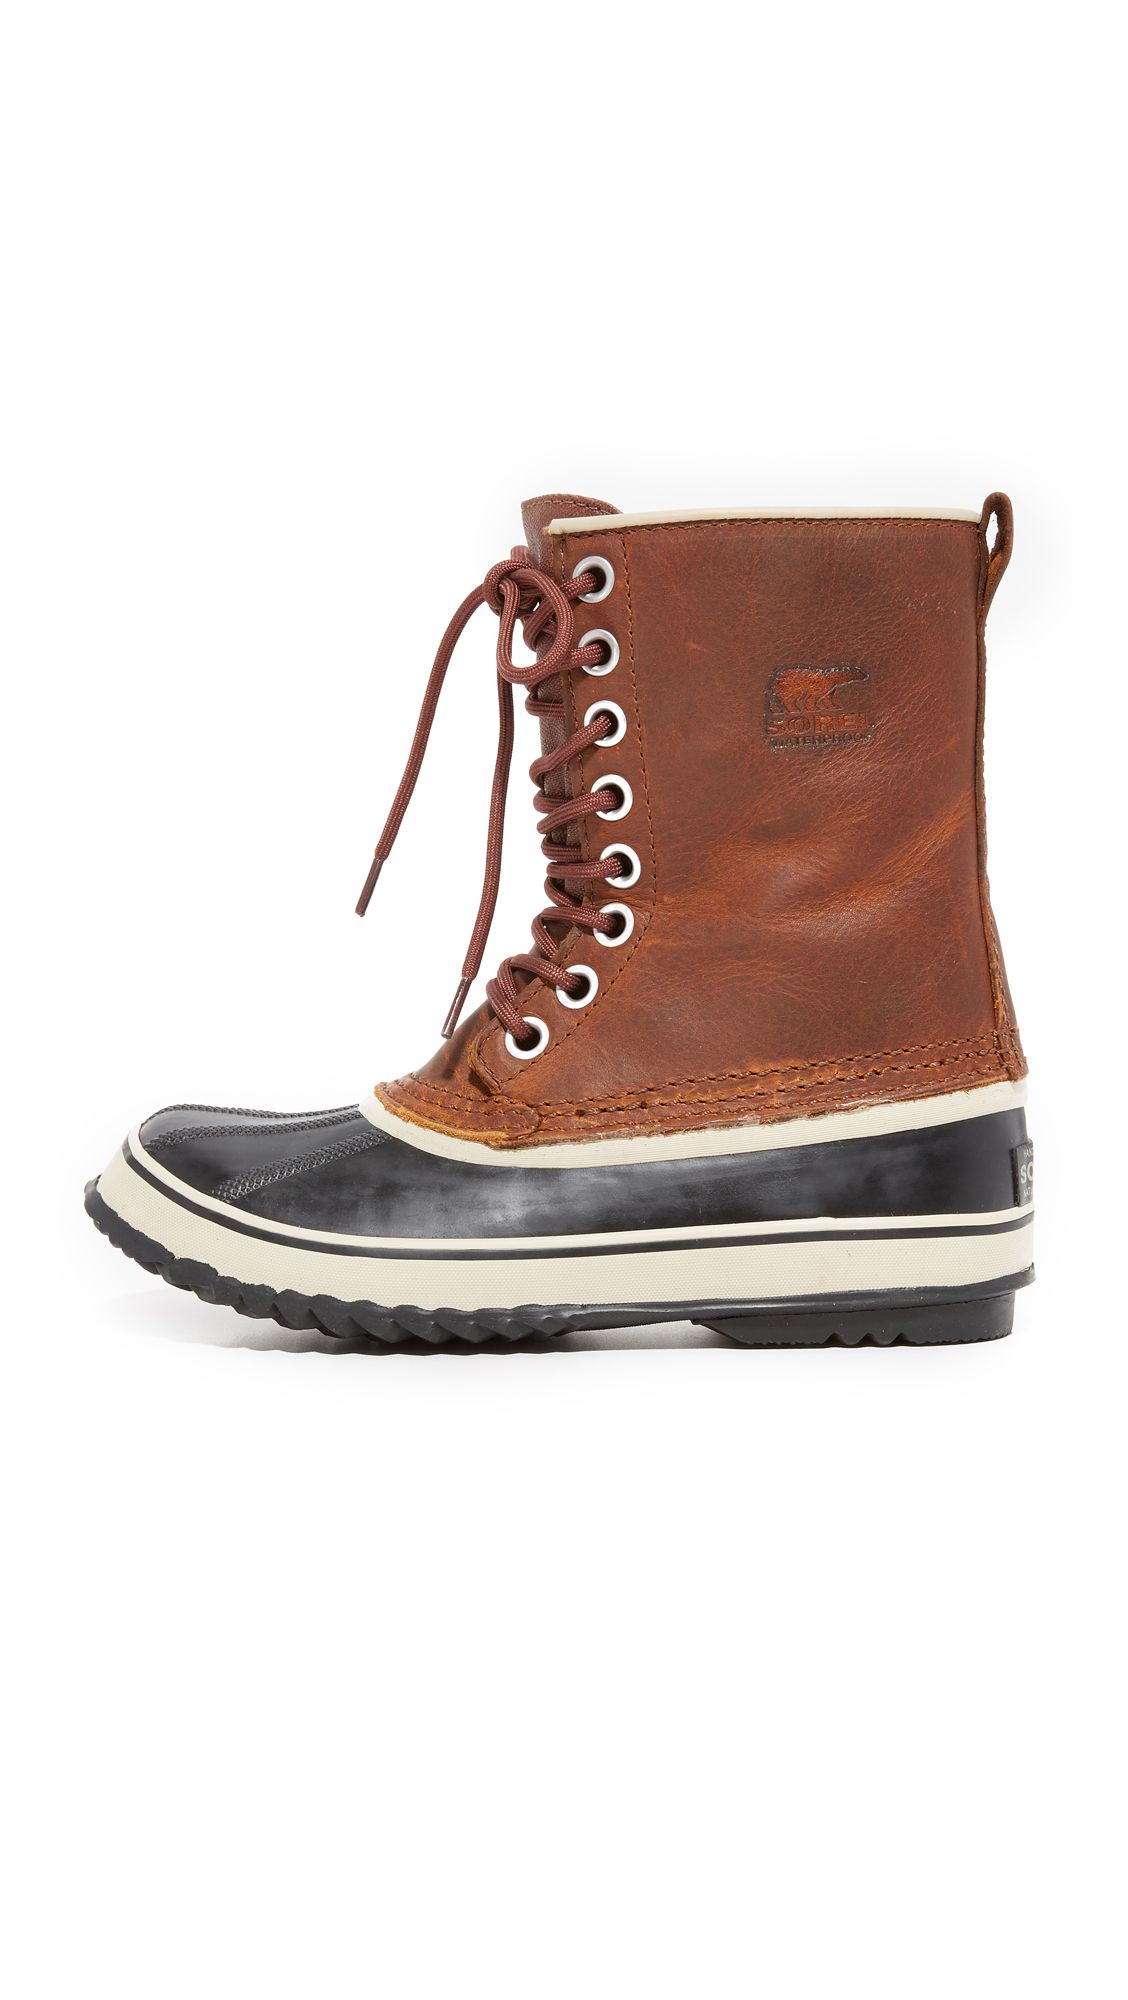 1964 Premium Leather Boots | Shopbop